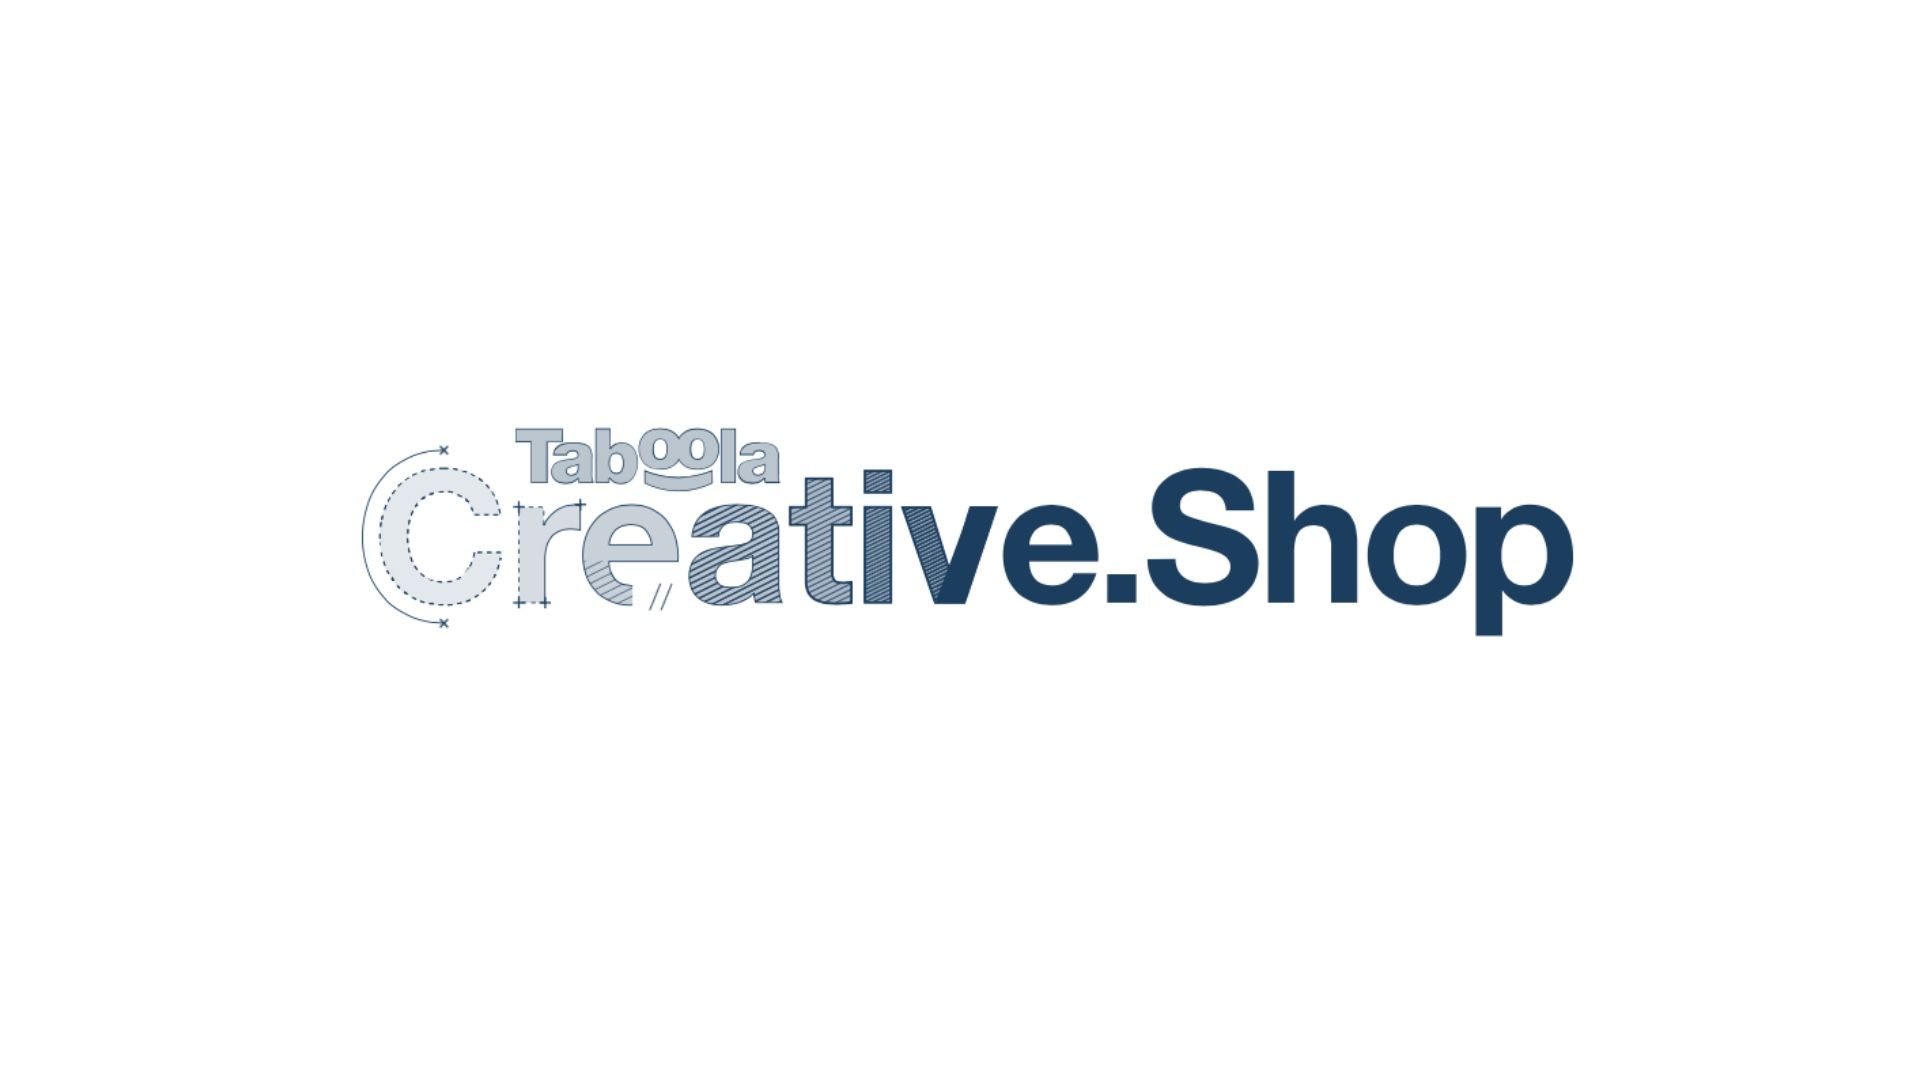 Taboola launches a Creative Shop